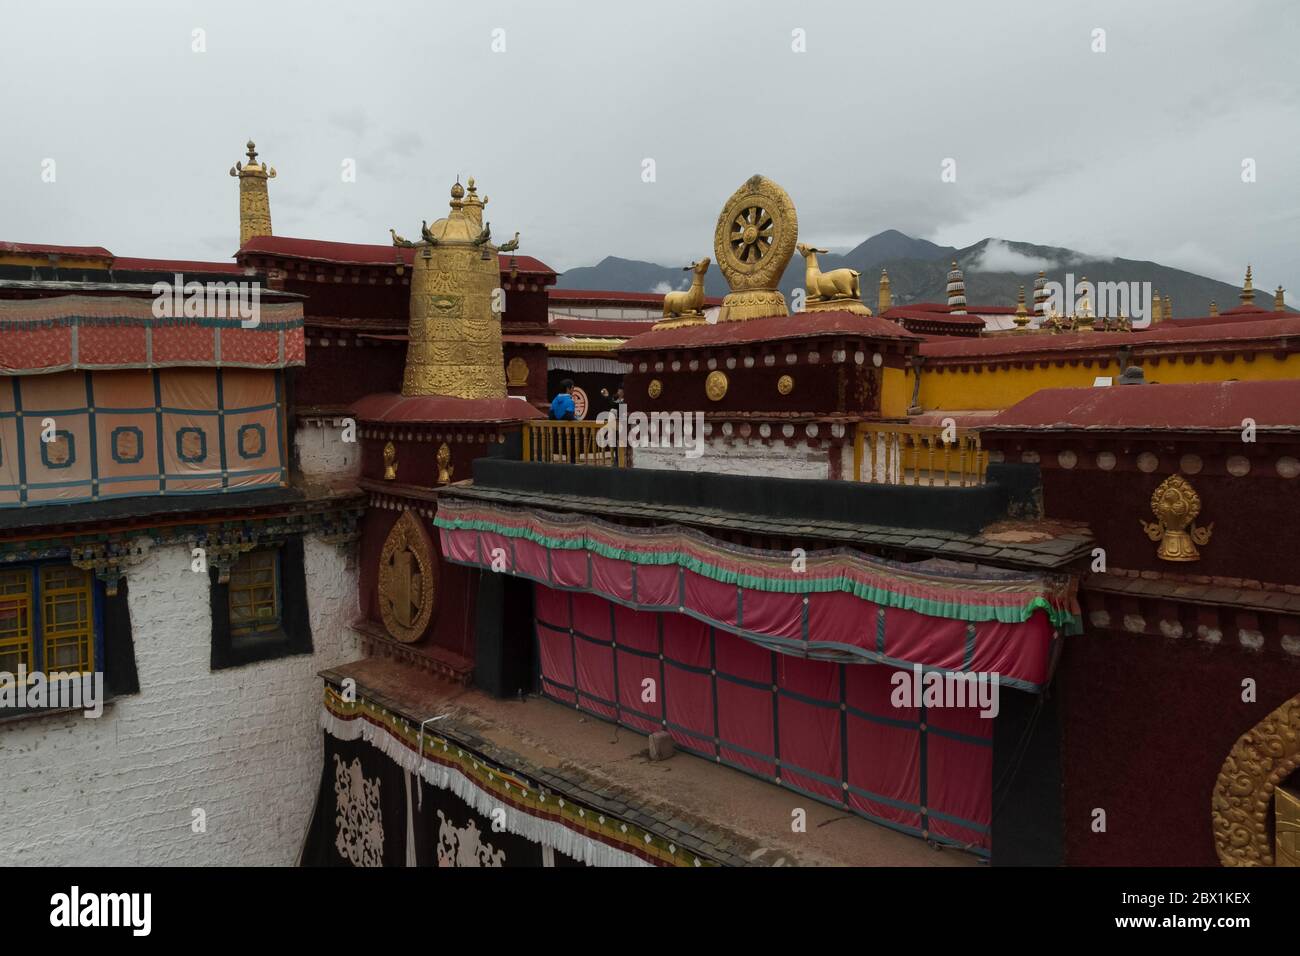 Lhasa, Tibet / China - 20. August 2012: Architektonische Details und farbenfrohes Design im Jokhang Tempel in Lhasa, Tibet, China Stockfoto